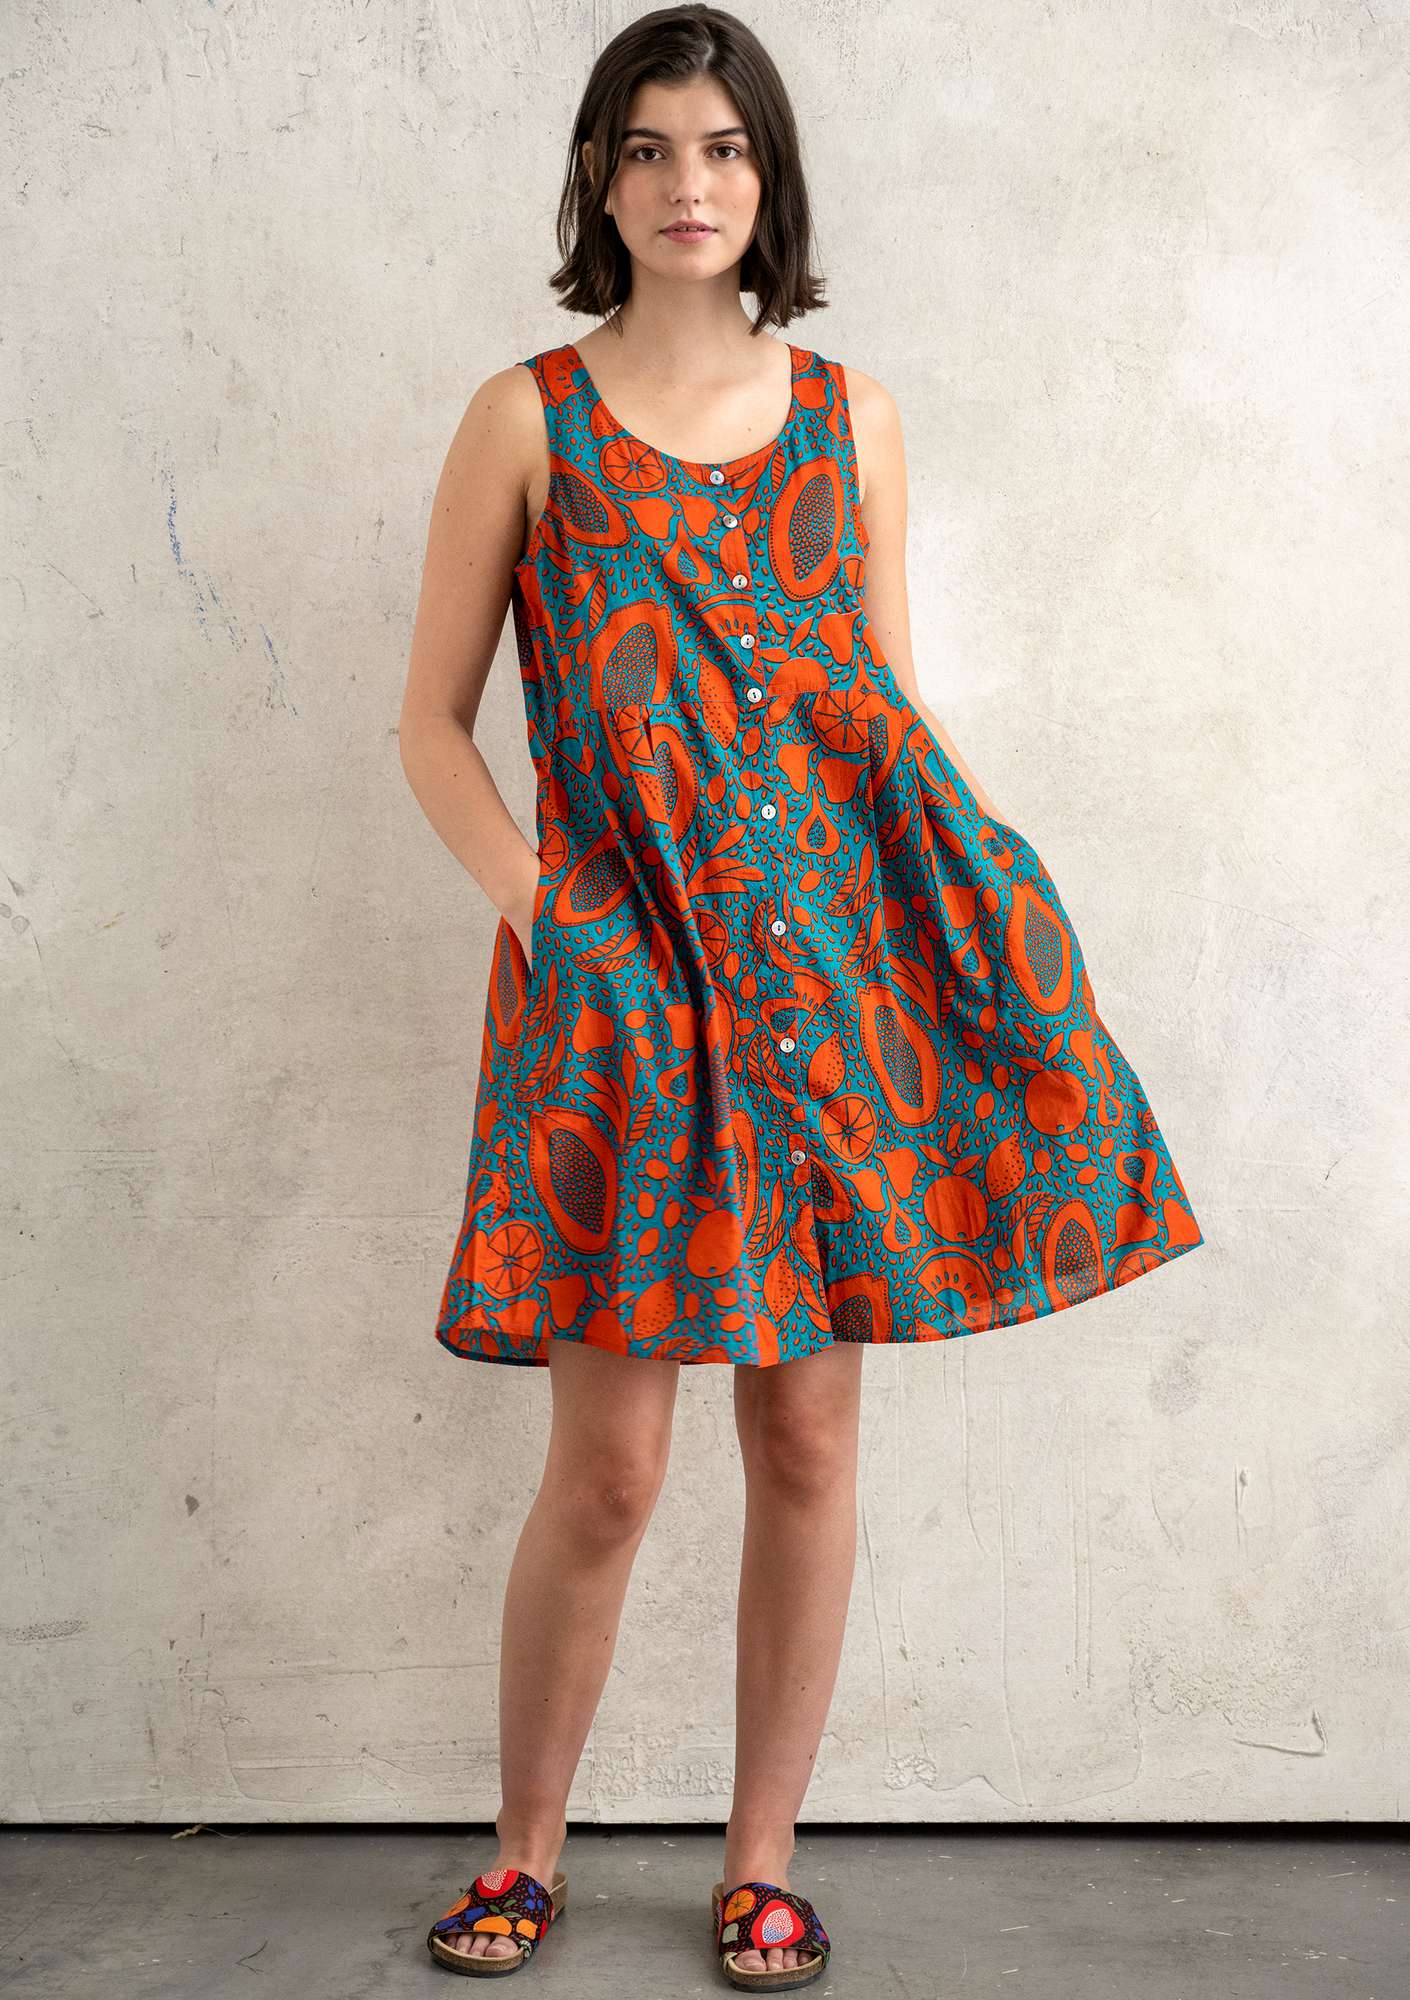 Vevd kjole «Marimba» i økologisk bomull lavarød thumbnail